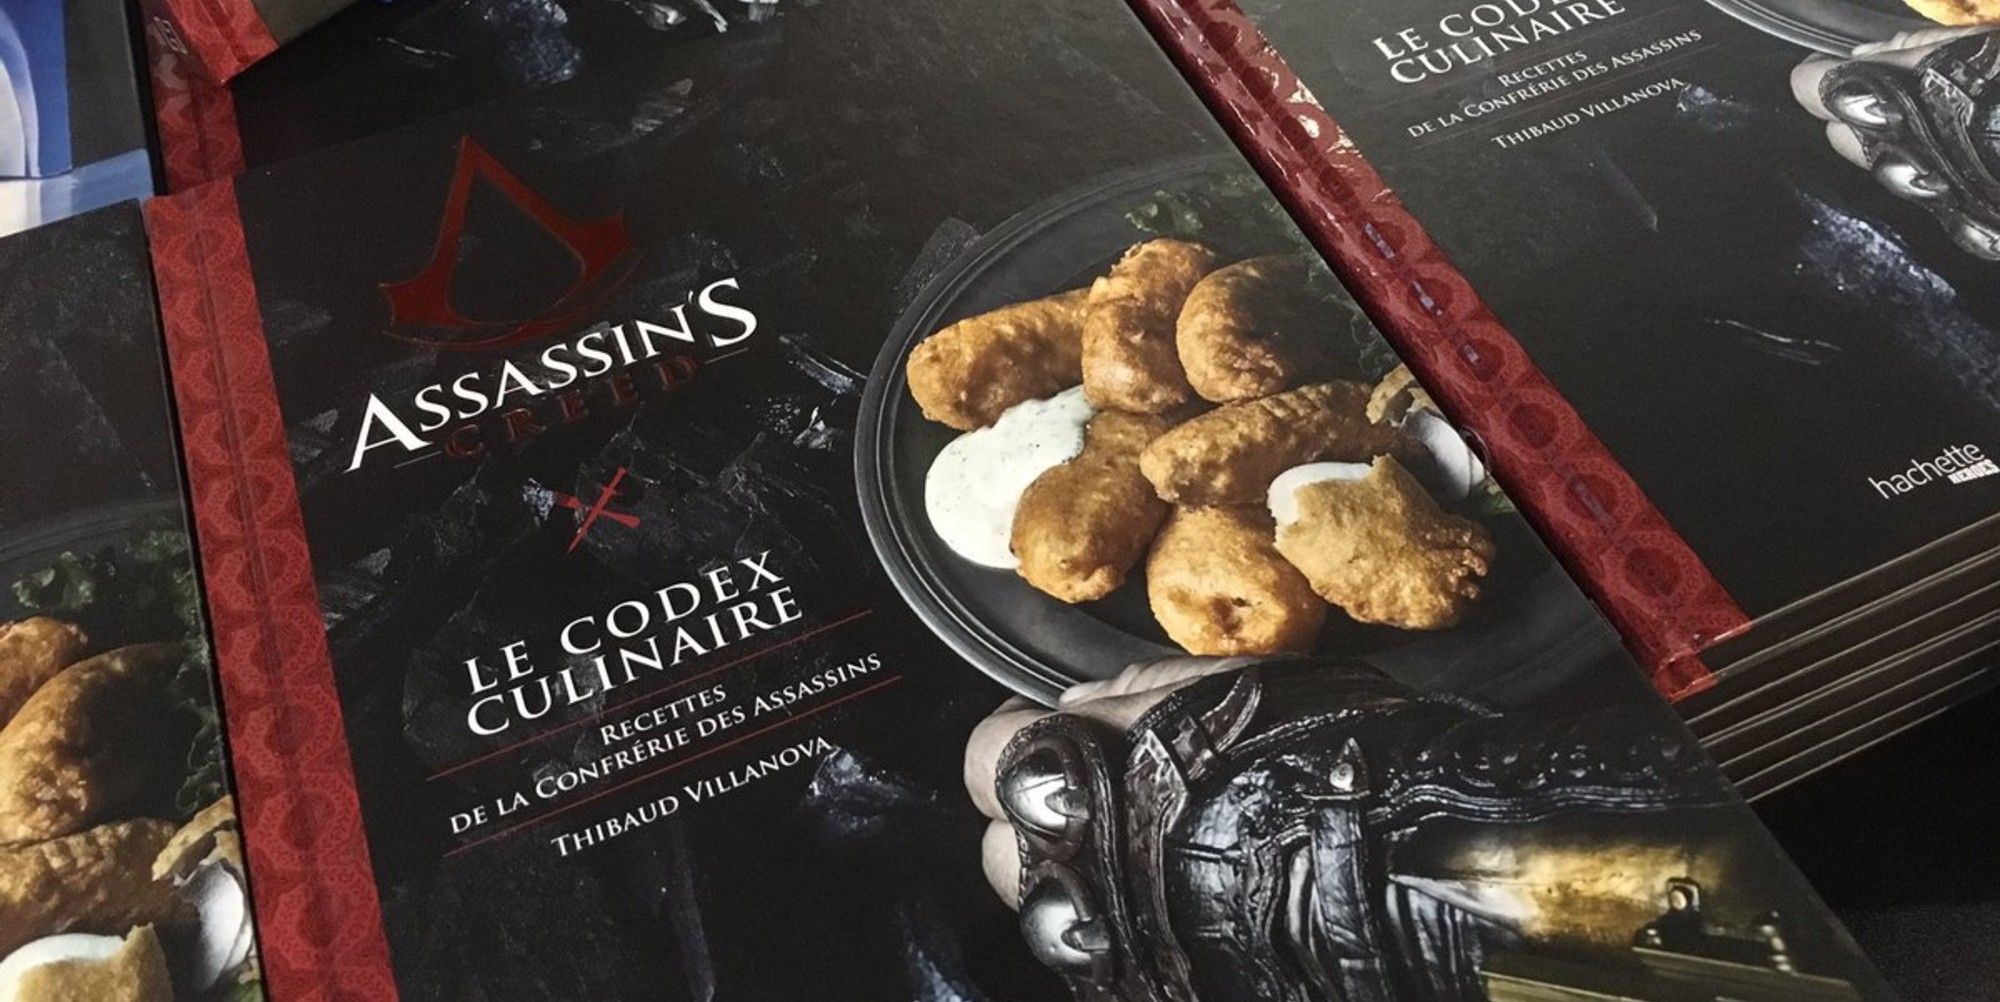 Assassins Creed кулинардык кодекси (1)